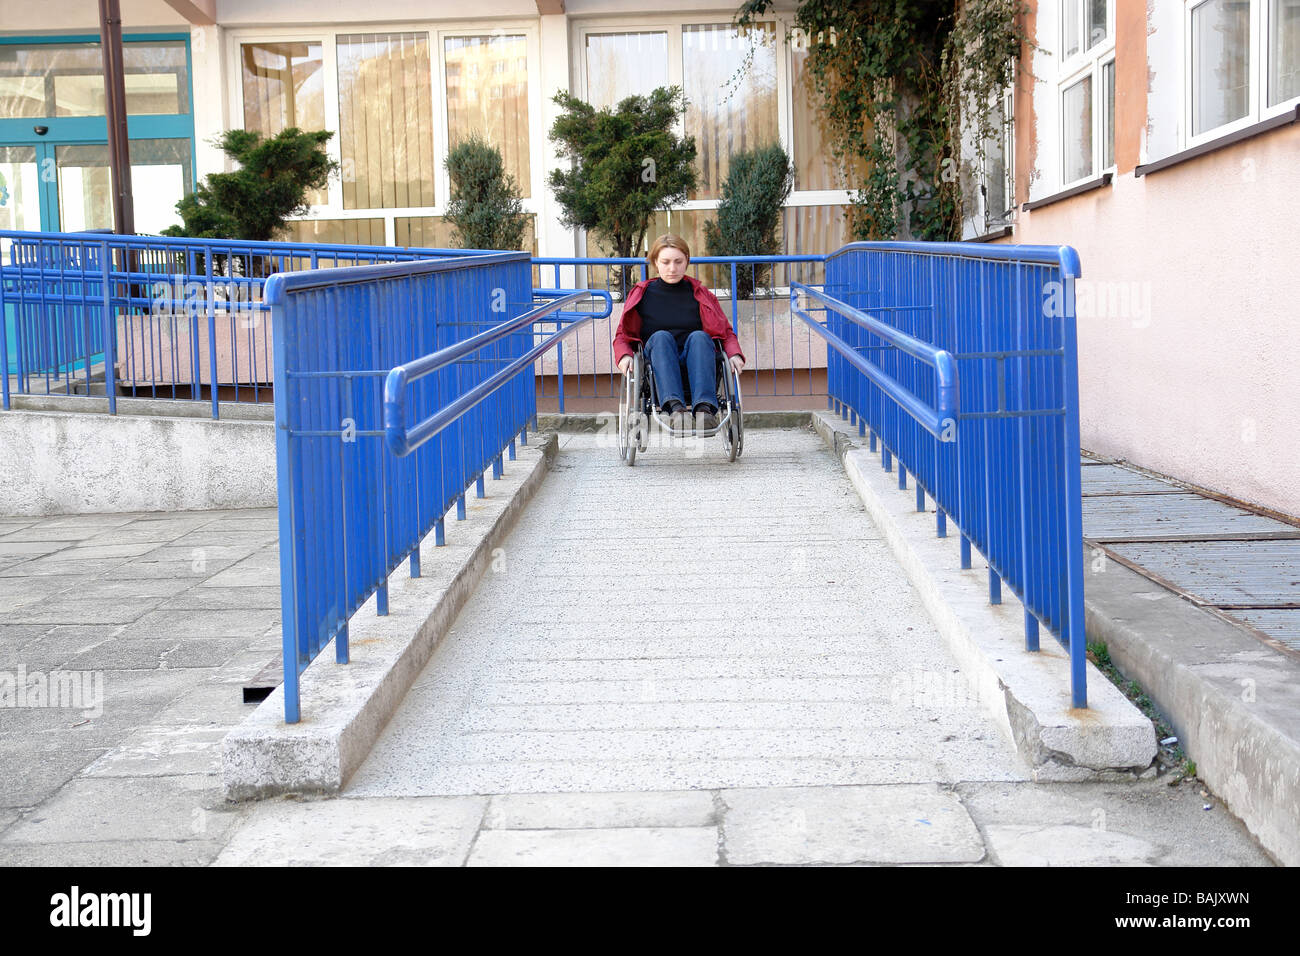 Femme handicapée sur fauteuil roulant quittent l'édifice à l'aide de rampe pour personnes à mobilité réduite Banque D'Images